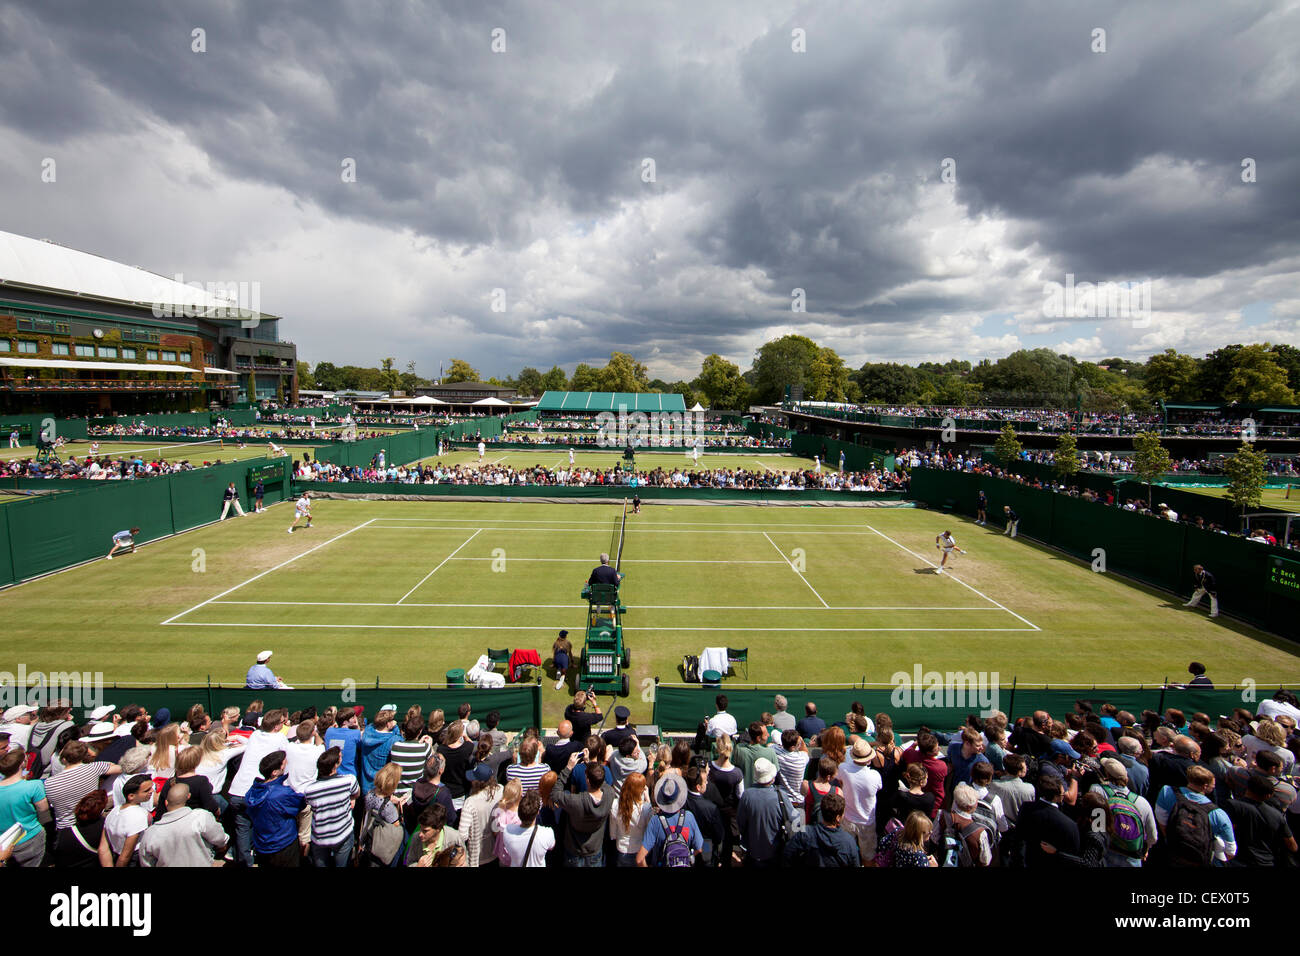 Vista general de fuera de los tribunales en los Campeonatos de Tenis de Wimbledon Foto de stock